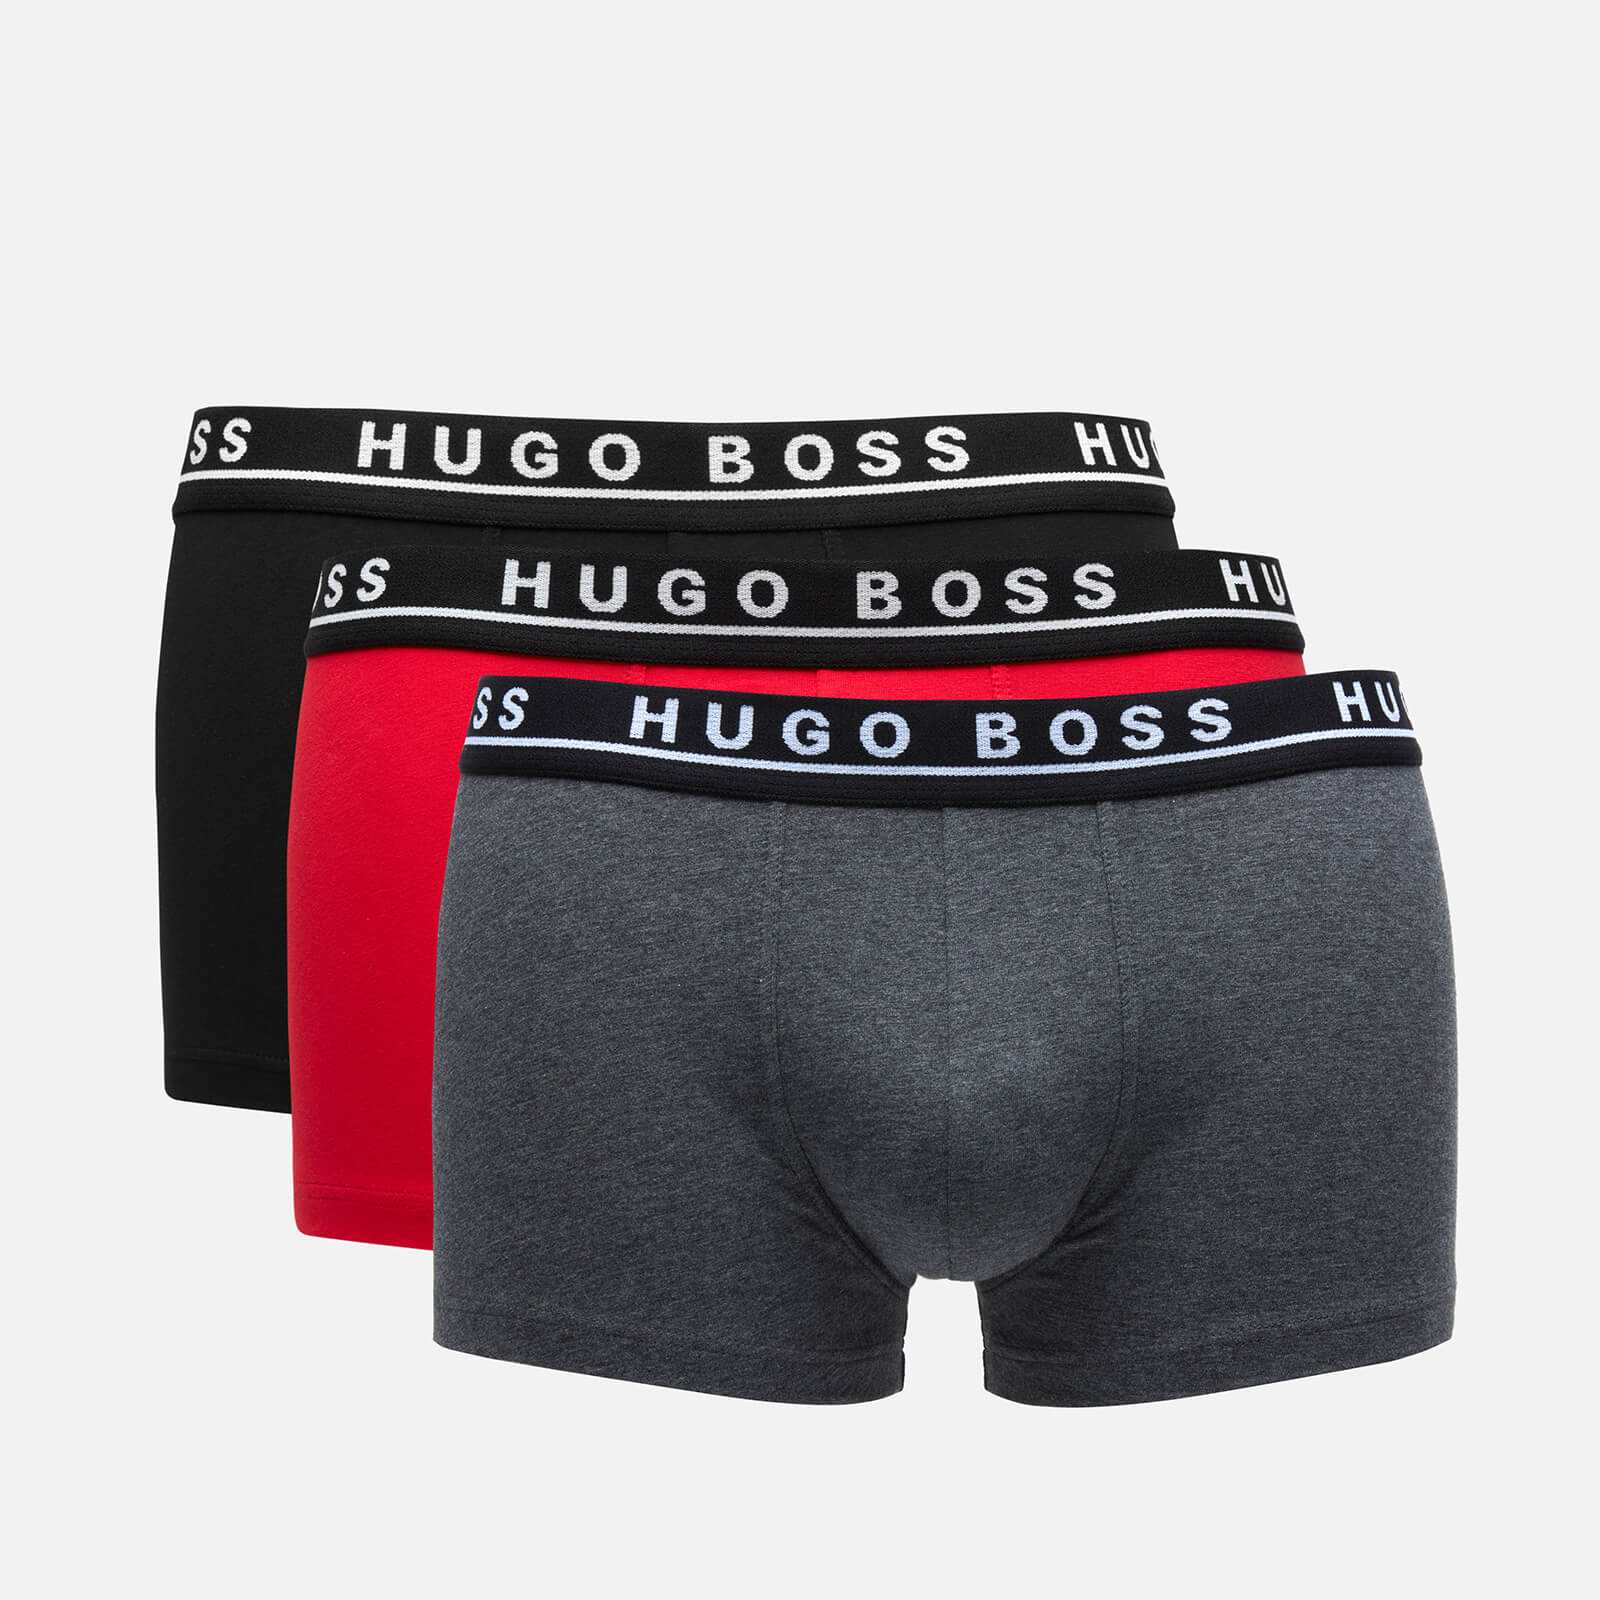 BOSS Bodywear Men's Boxer Shorts Triple Pack - Grey Melange/Red/Black - S